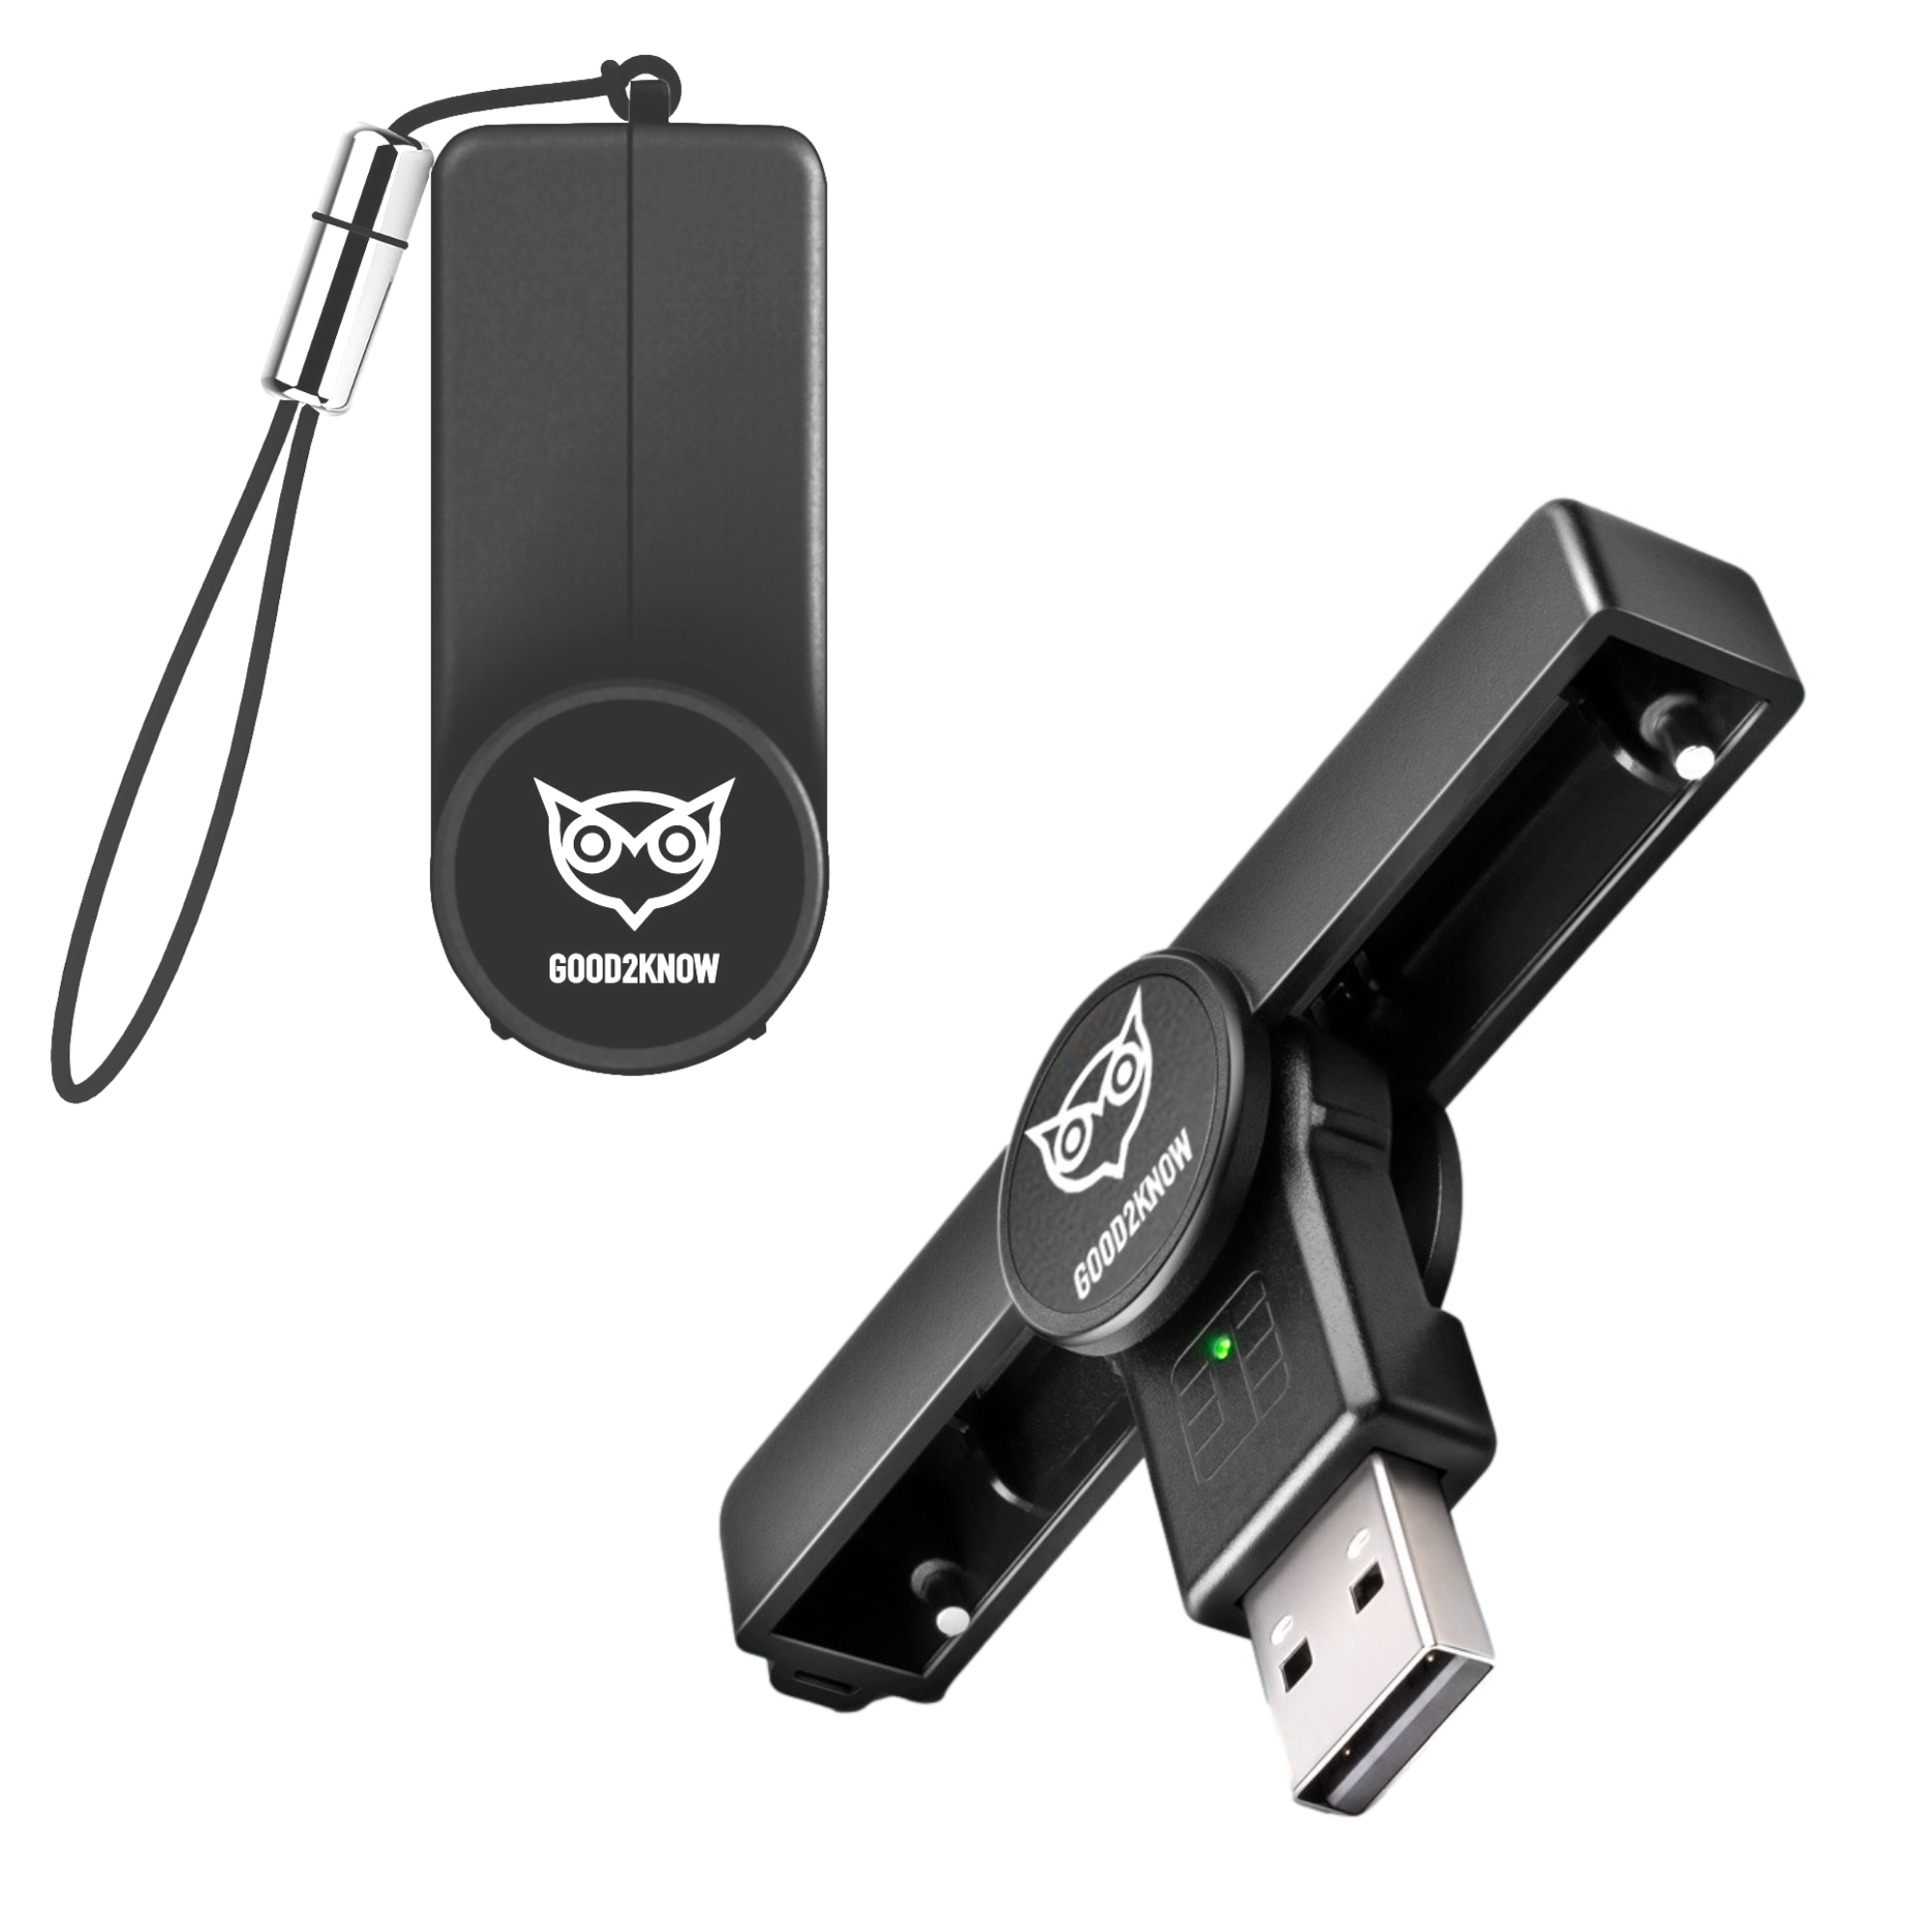 eID Kaartlezer Mini USB A Id Lezer België Zwart